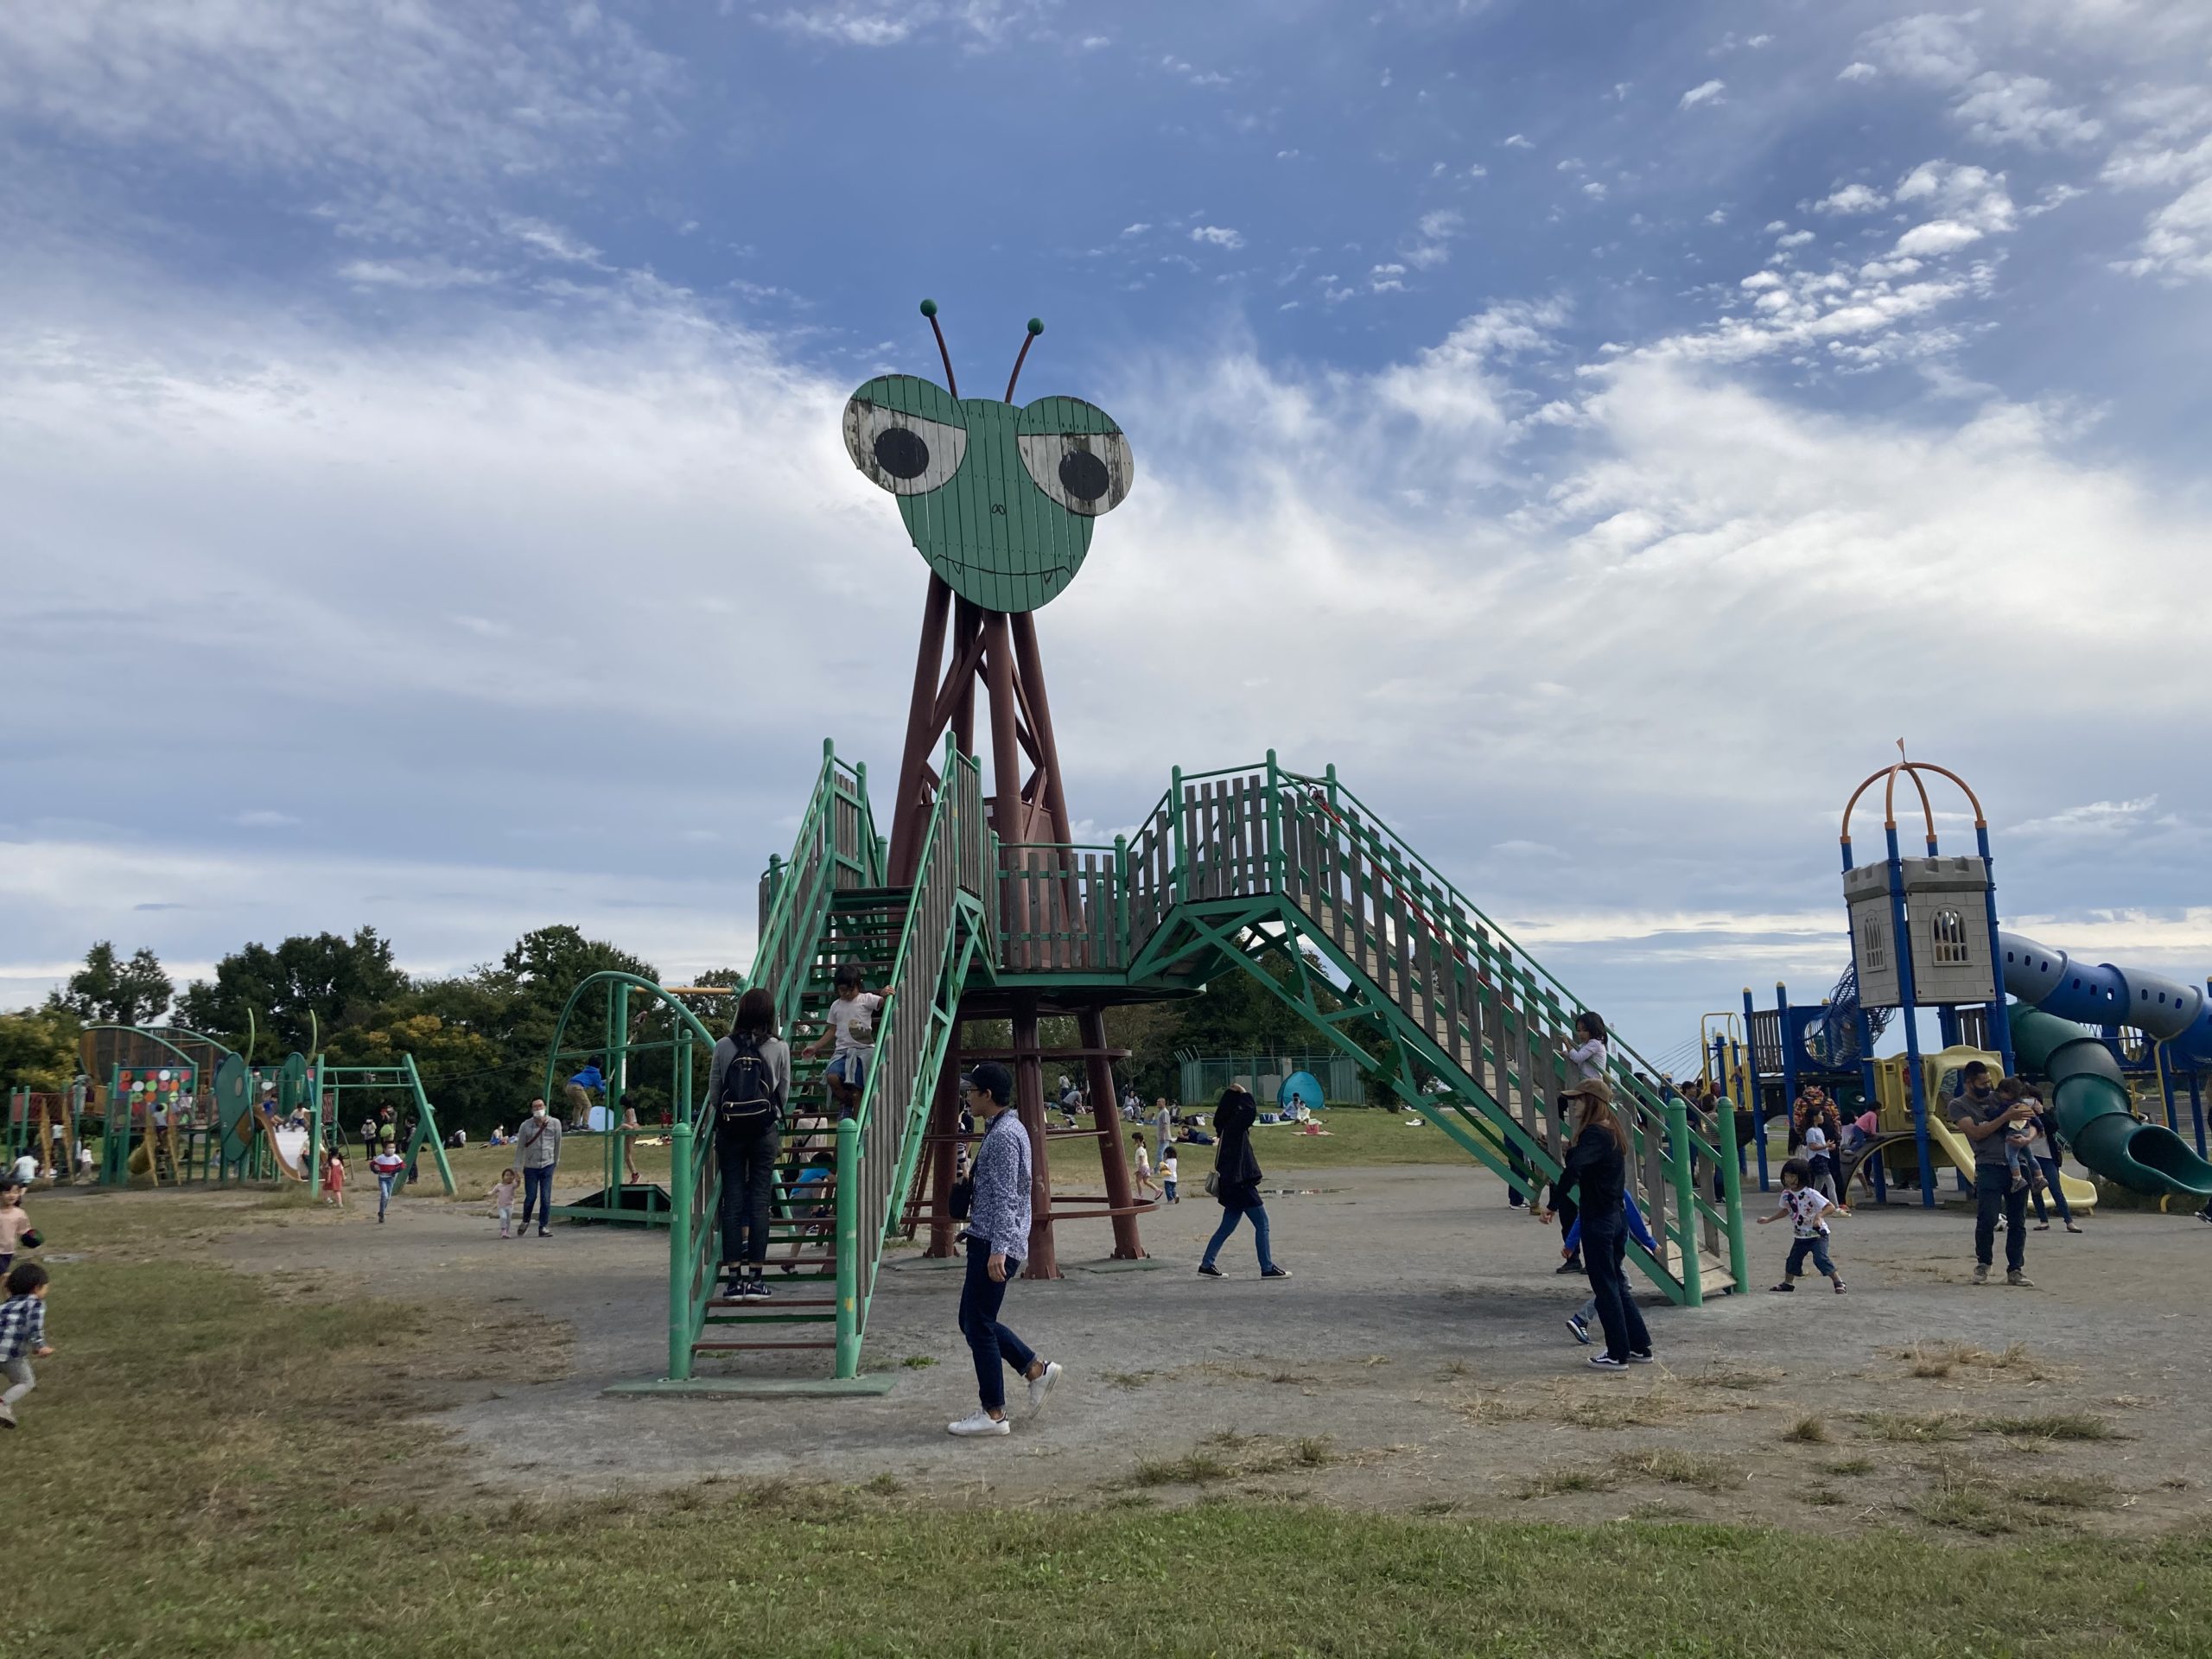 荒川彩湖公園 大きなカマキリ遊具がインパクト大 台風の影響から復活した公園 タケログ